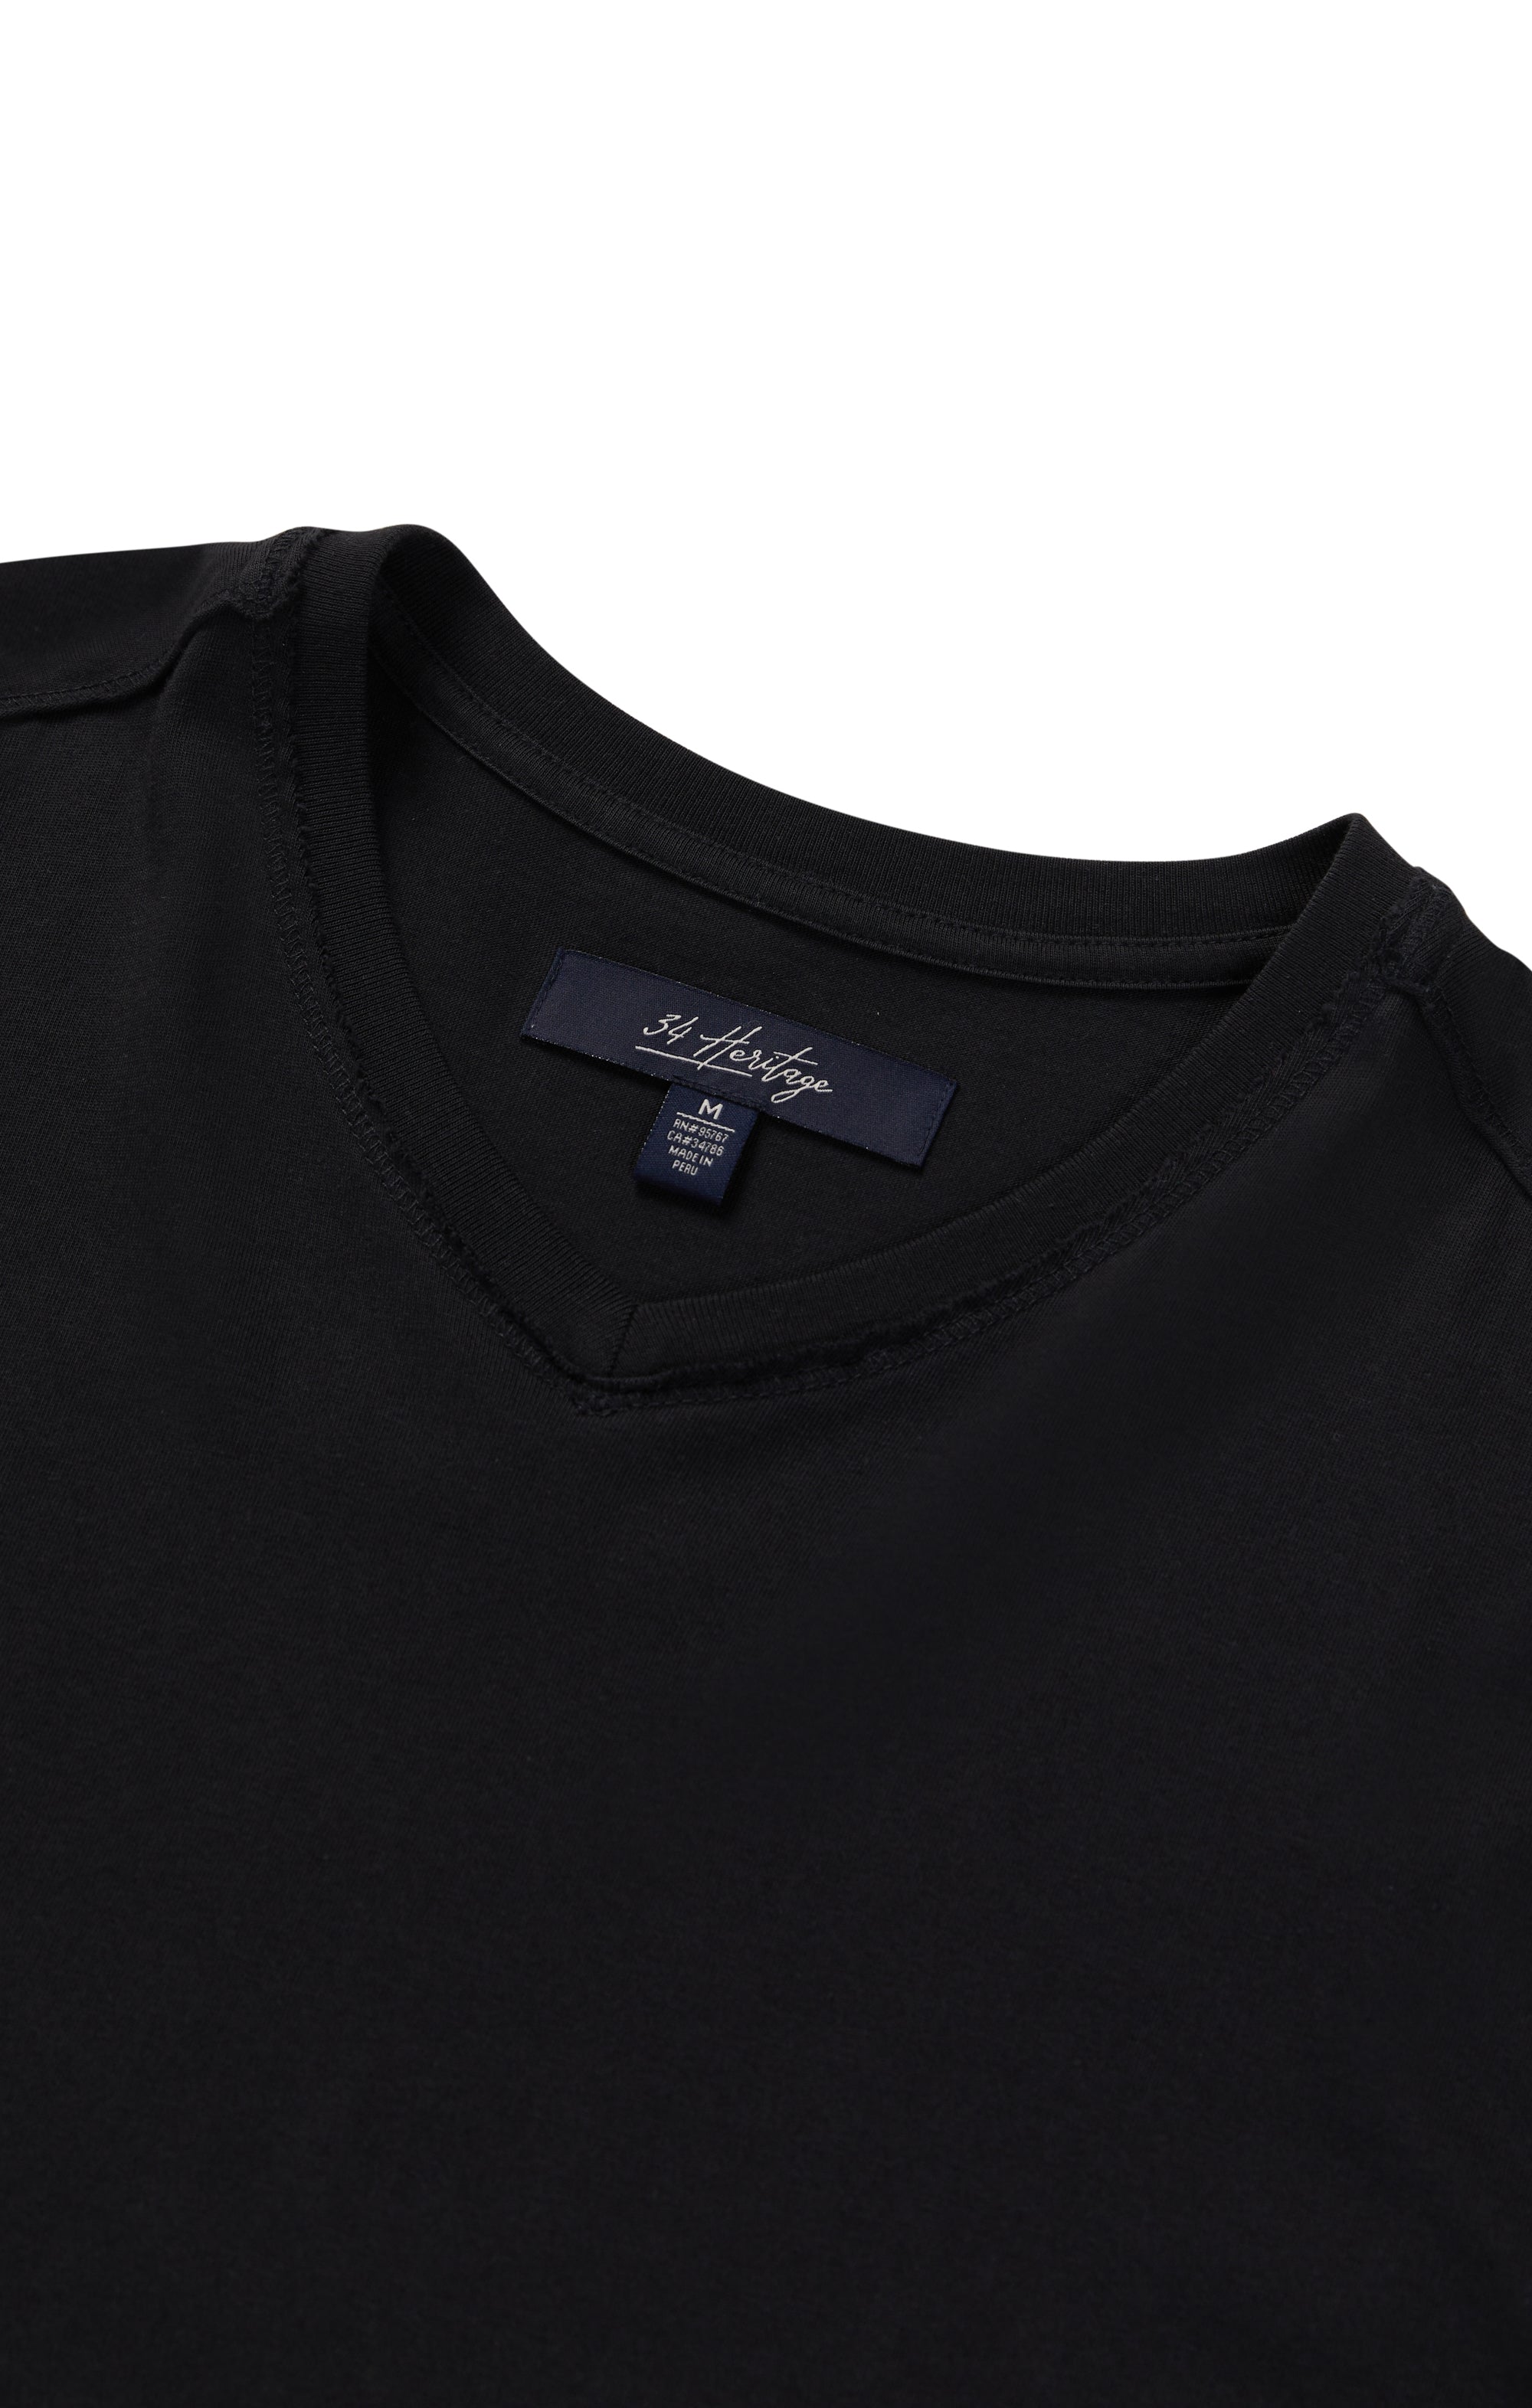 Deconstructed V-Neck T-Shirt in Black Image 8